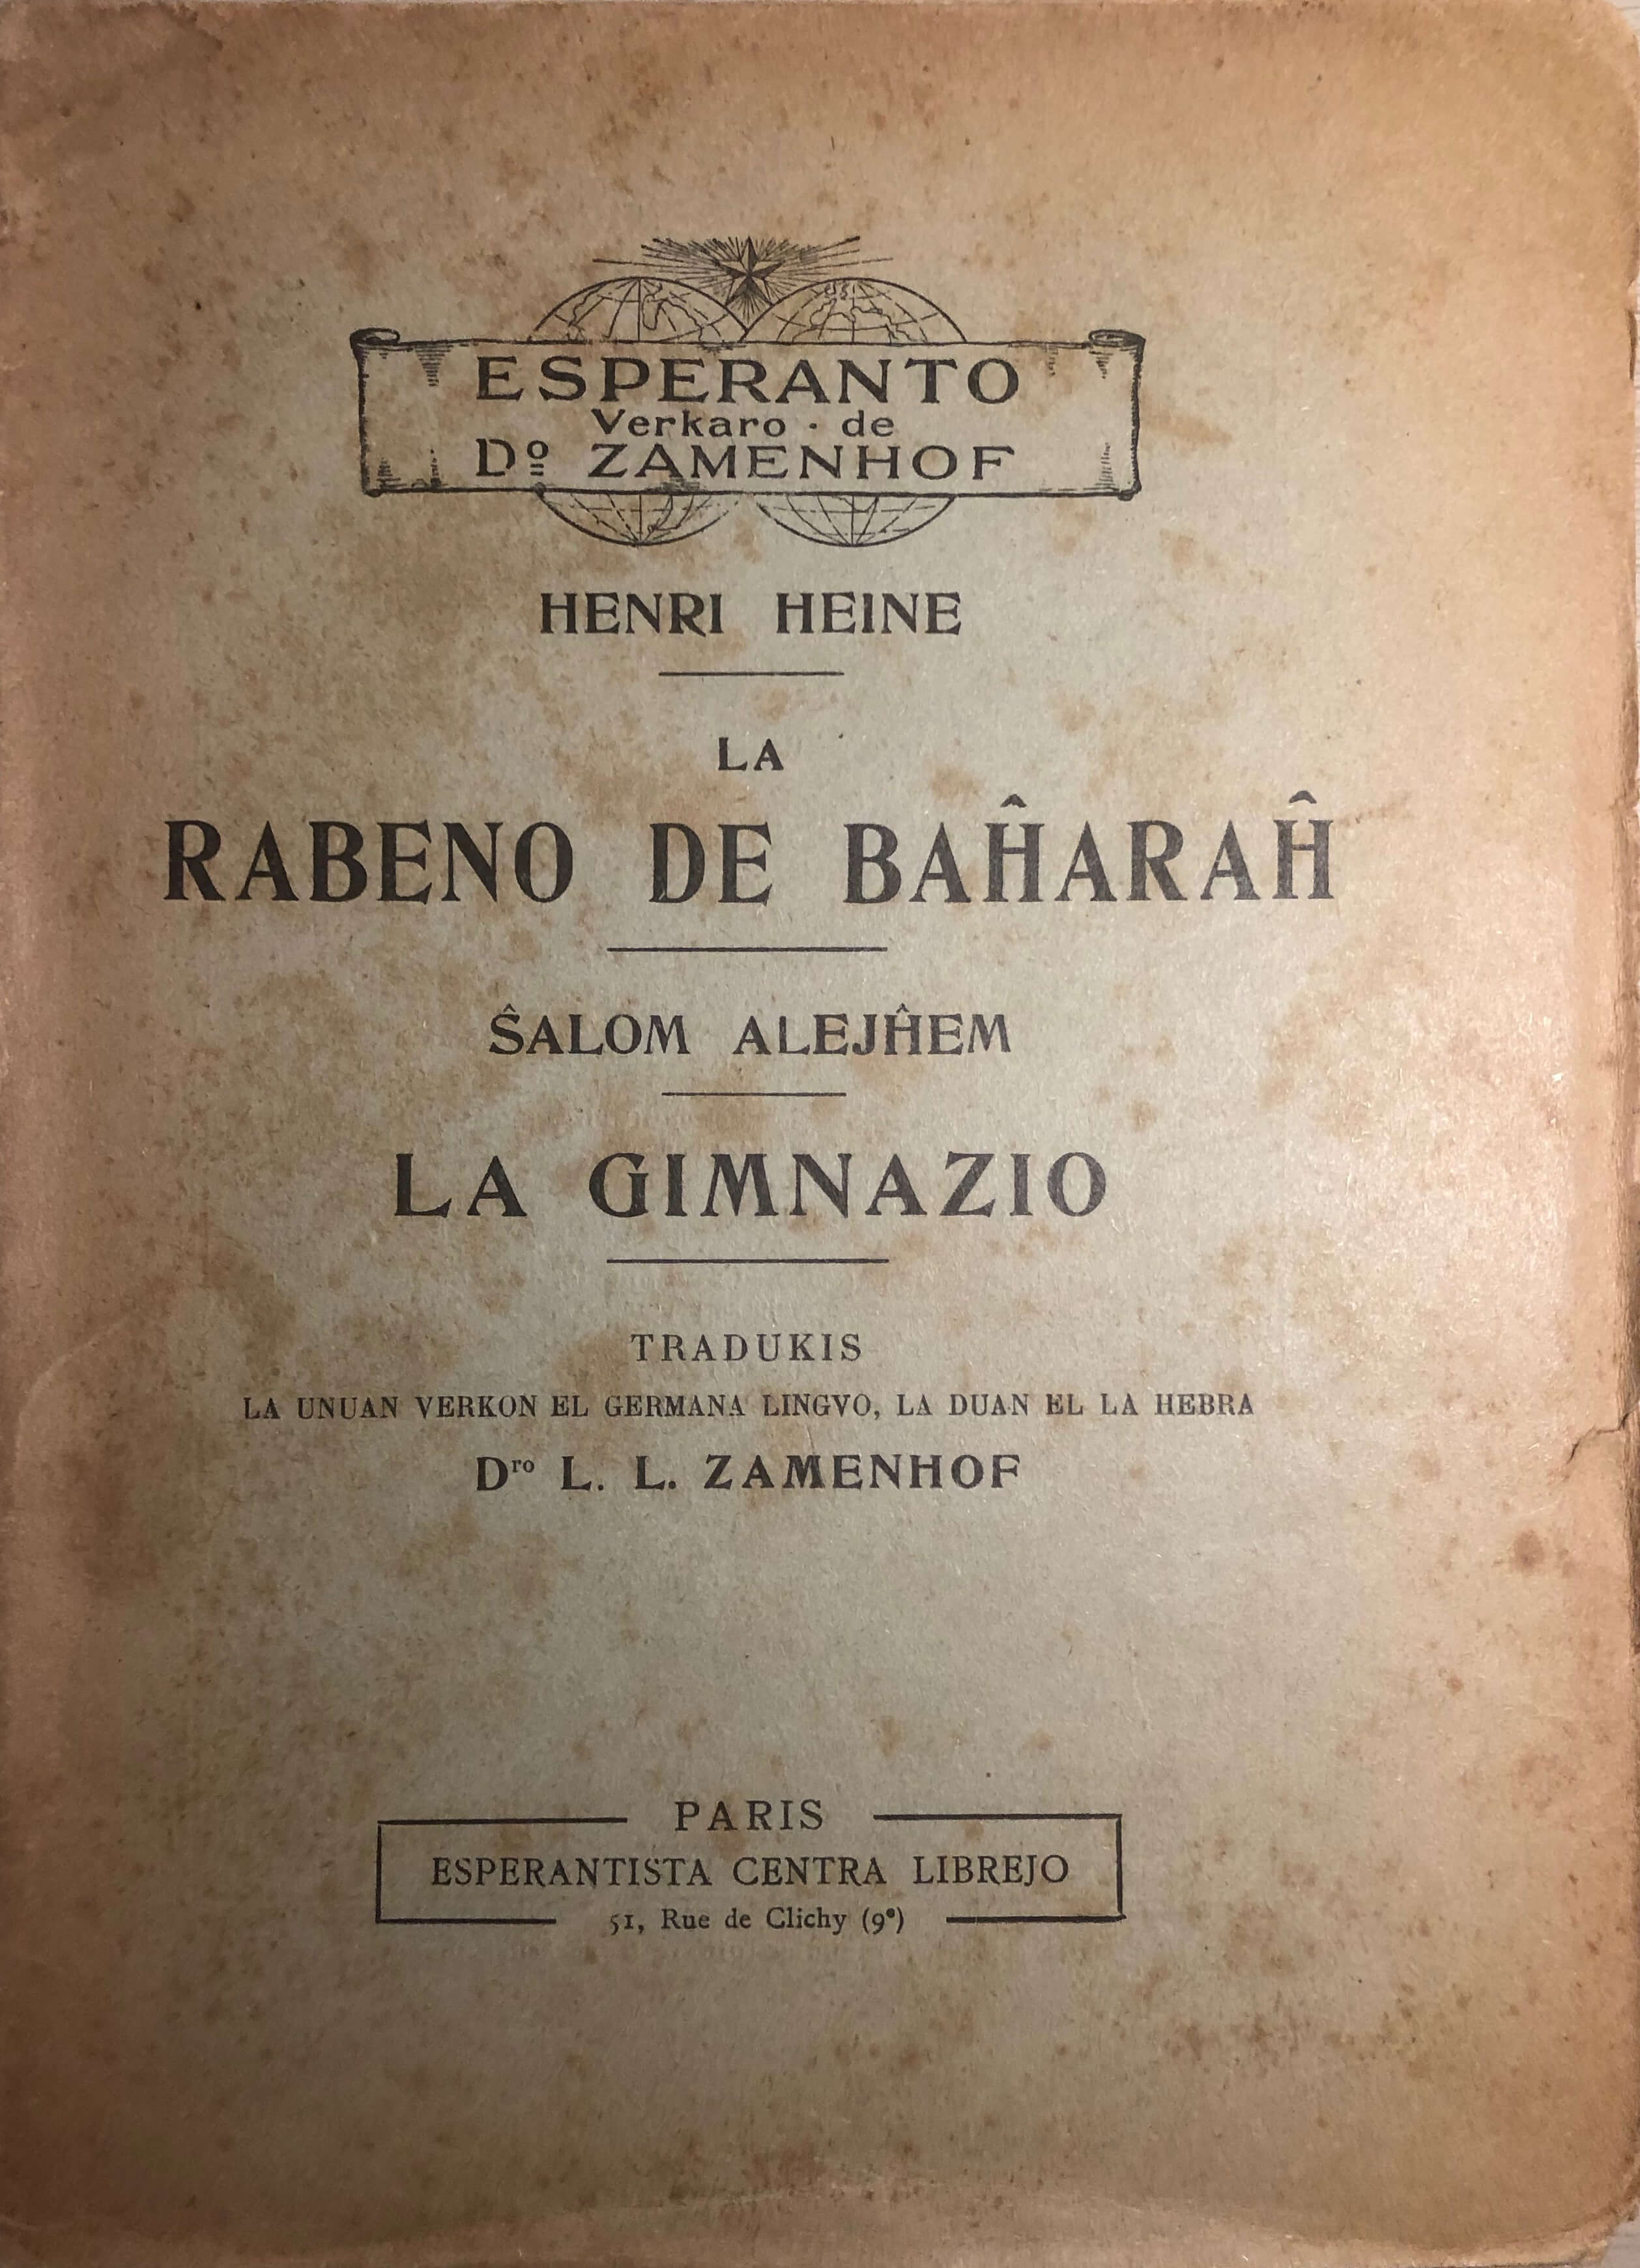 Cubiertas del manual de esperanto en yiddish y de <em>La Gimnazio</em> traducción al esperanto de Zamehof del monólogo de Sholem Aleijem